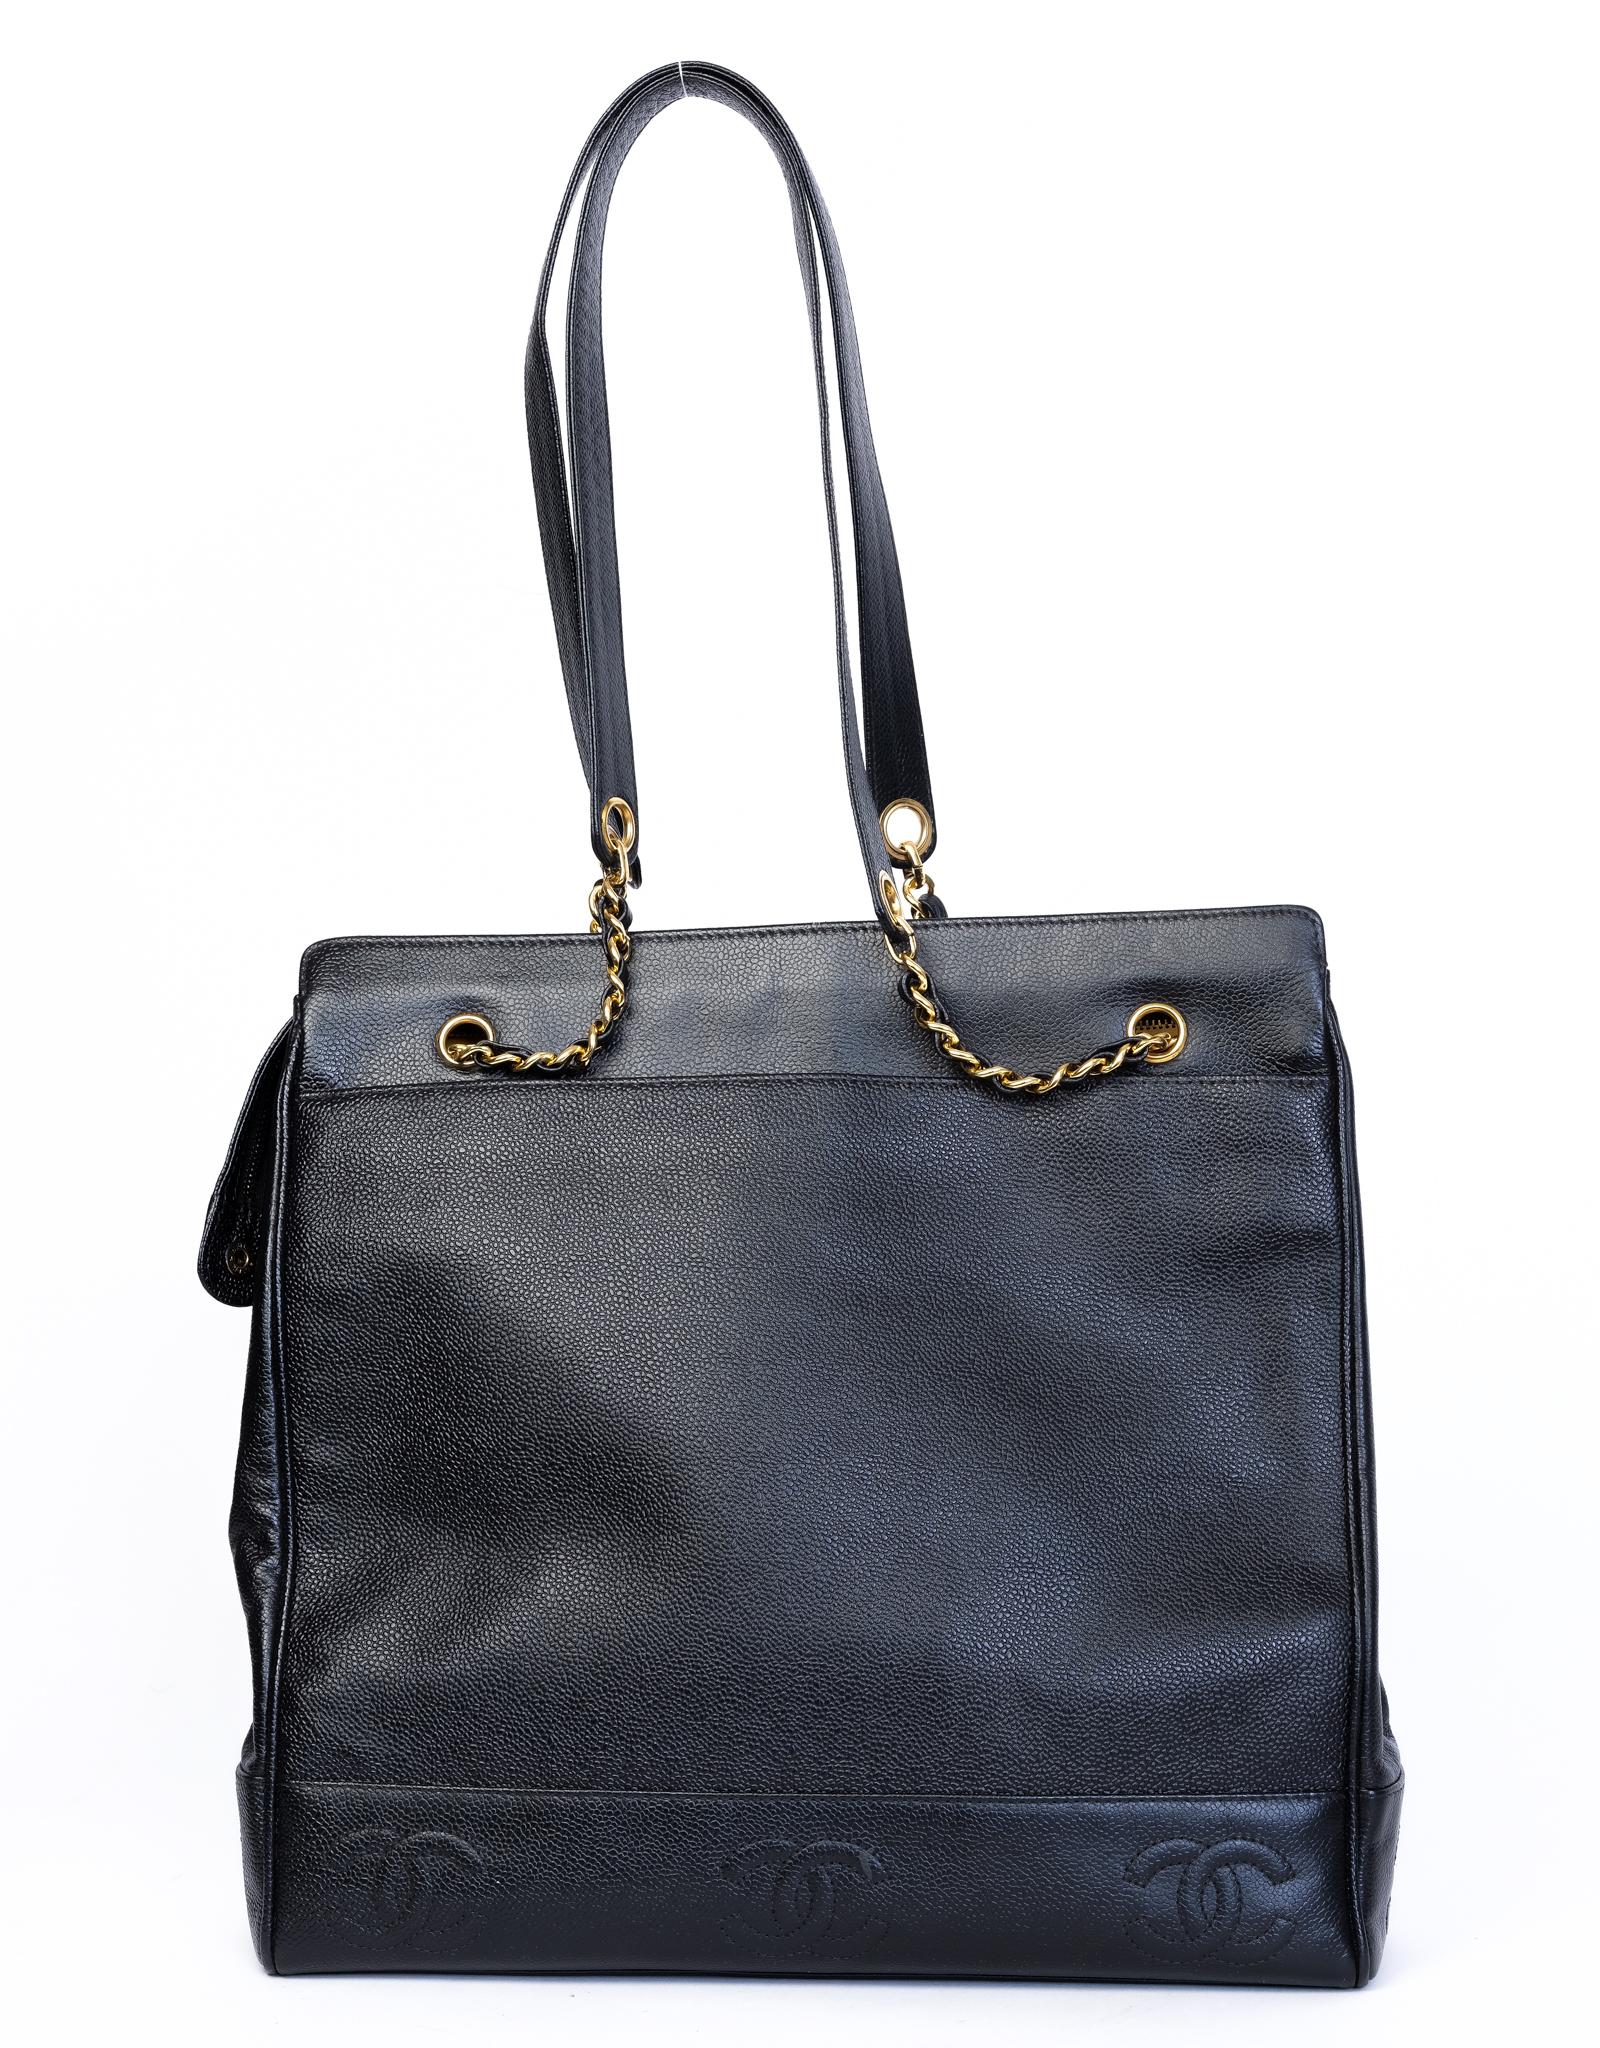 Ce sac shopping vintage en cuir Triple Coco des années 1990 est fabriqué en cuir noir. Il présente un triple logo CC entrelacé brodé sur le devant, une chaîne dorée entrelacée de cuir reliée à une lanière en cuir avec une fermeture à glissière